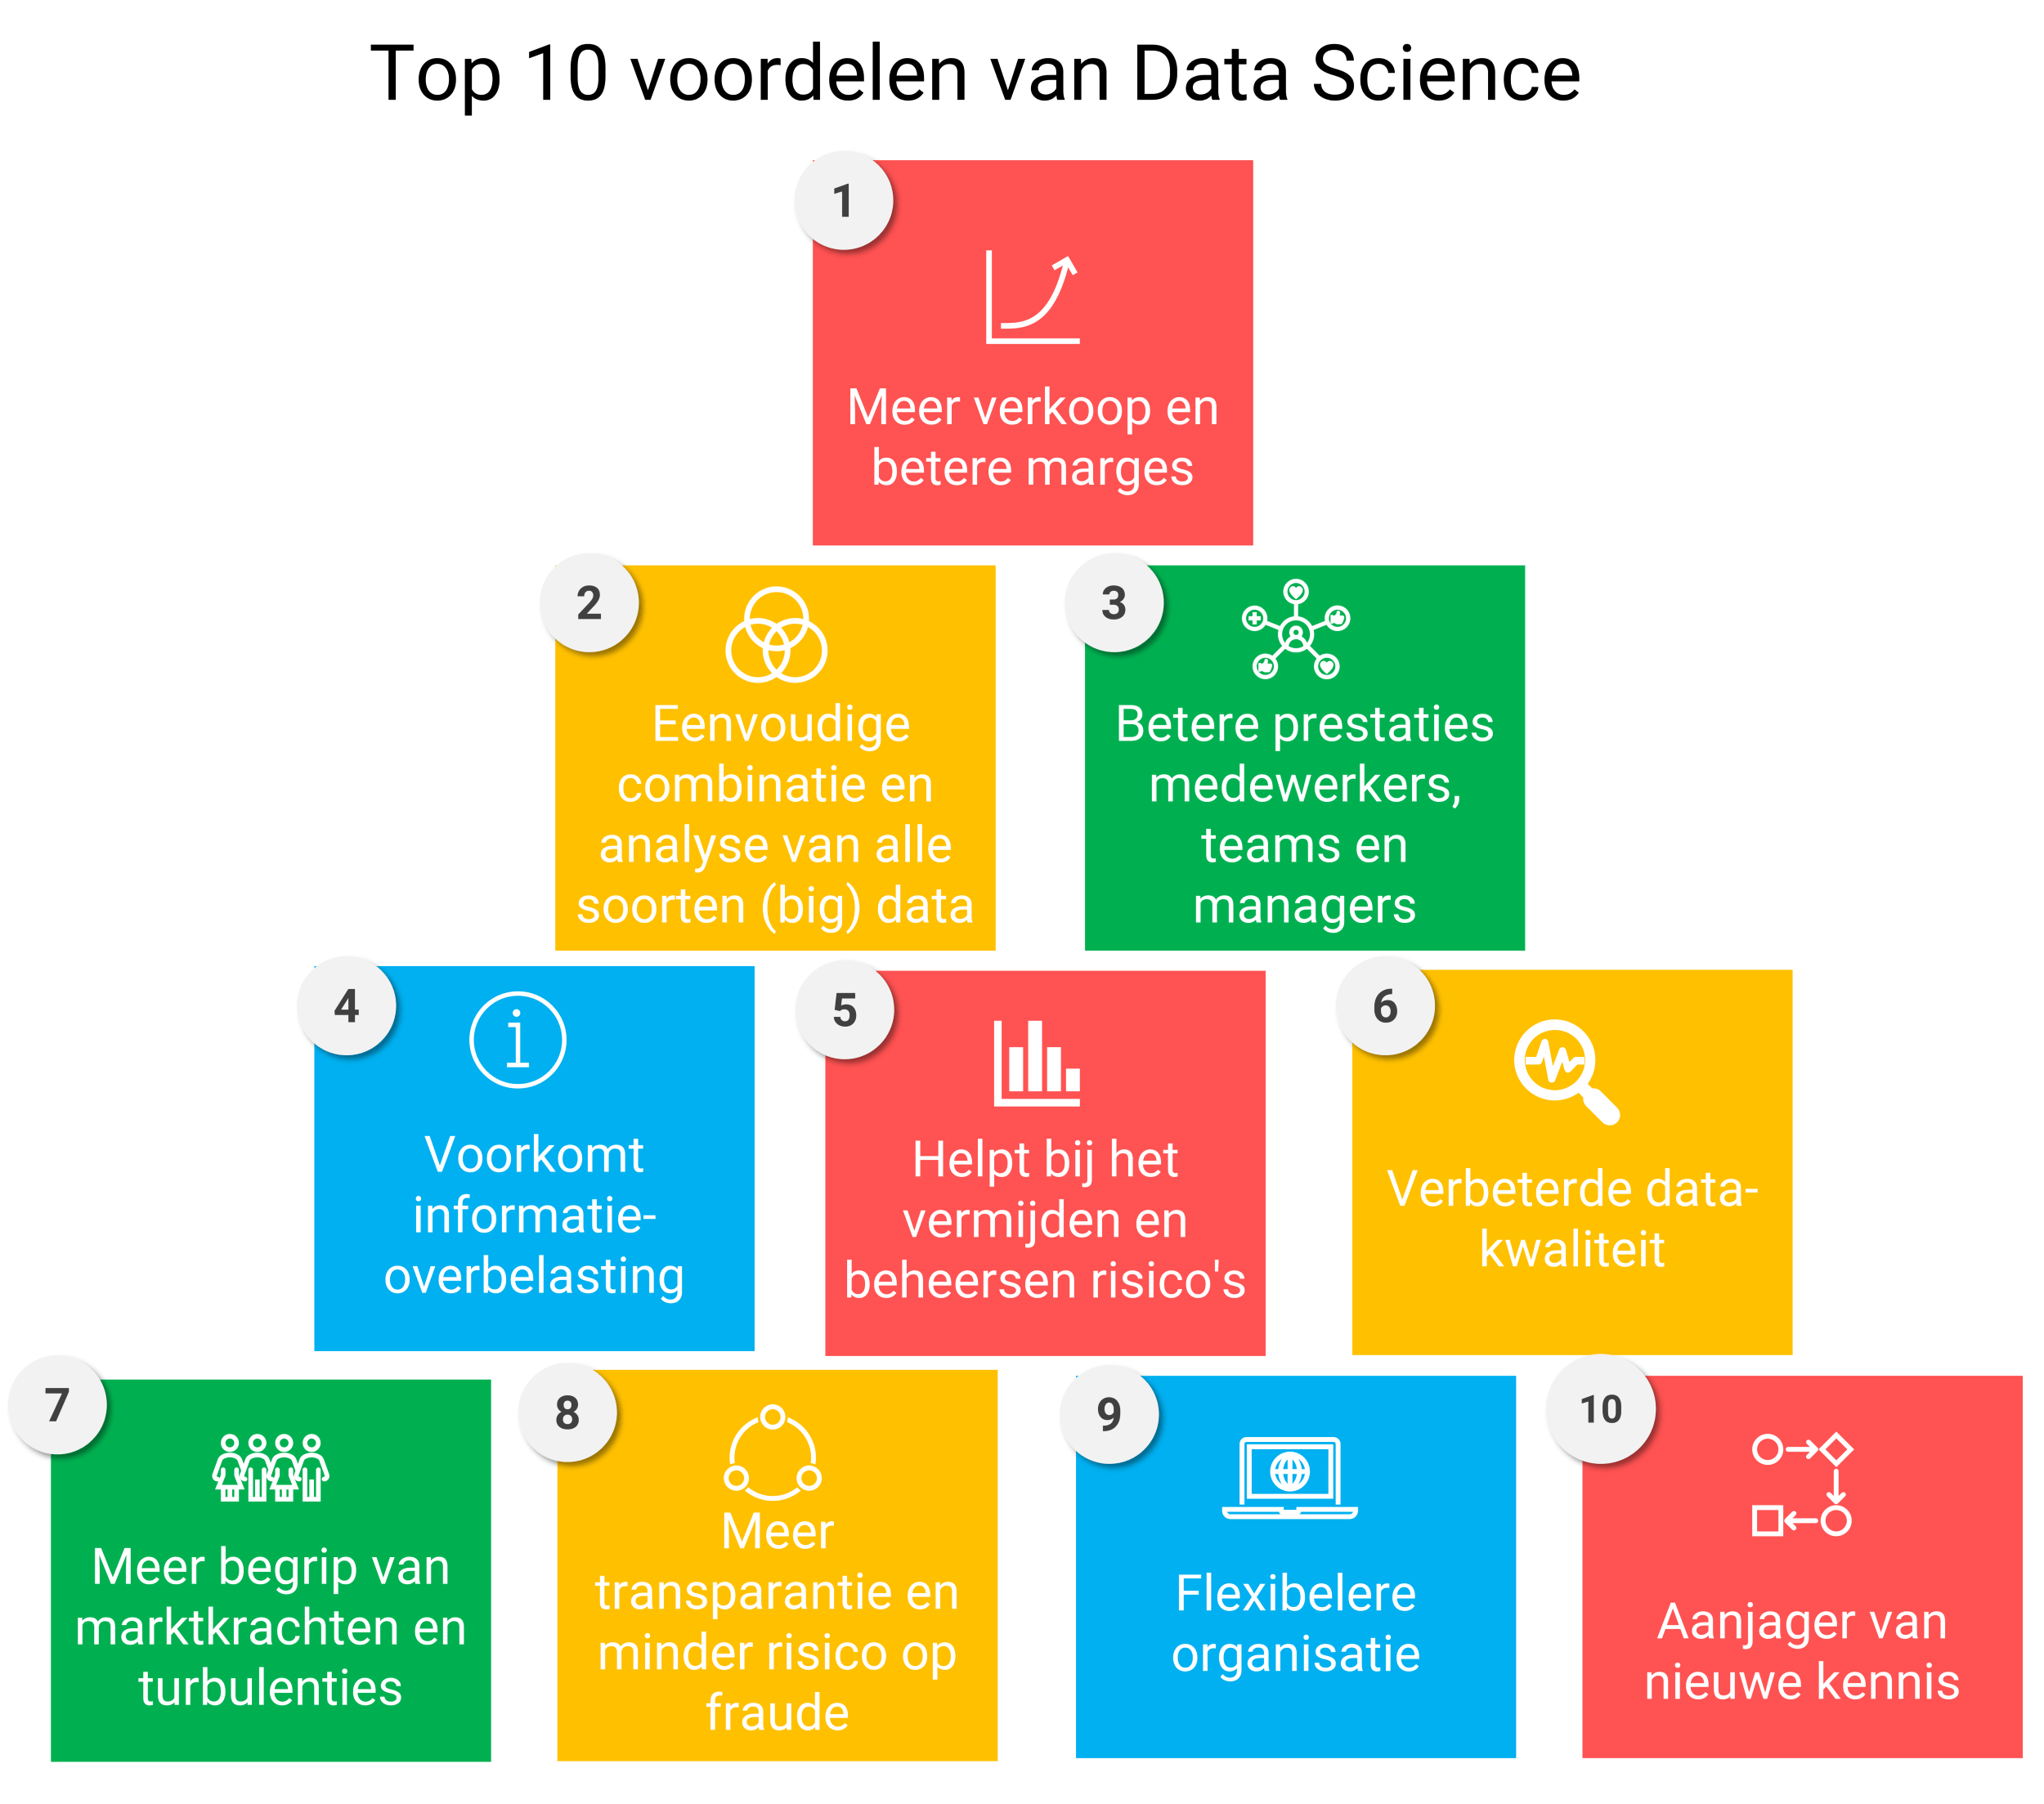 Top 10 voordelen van Data Science